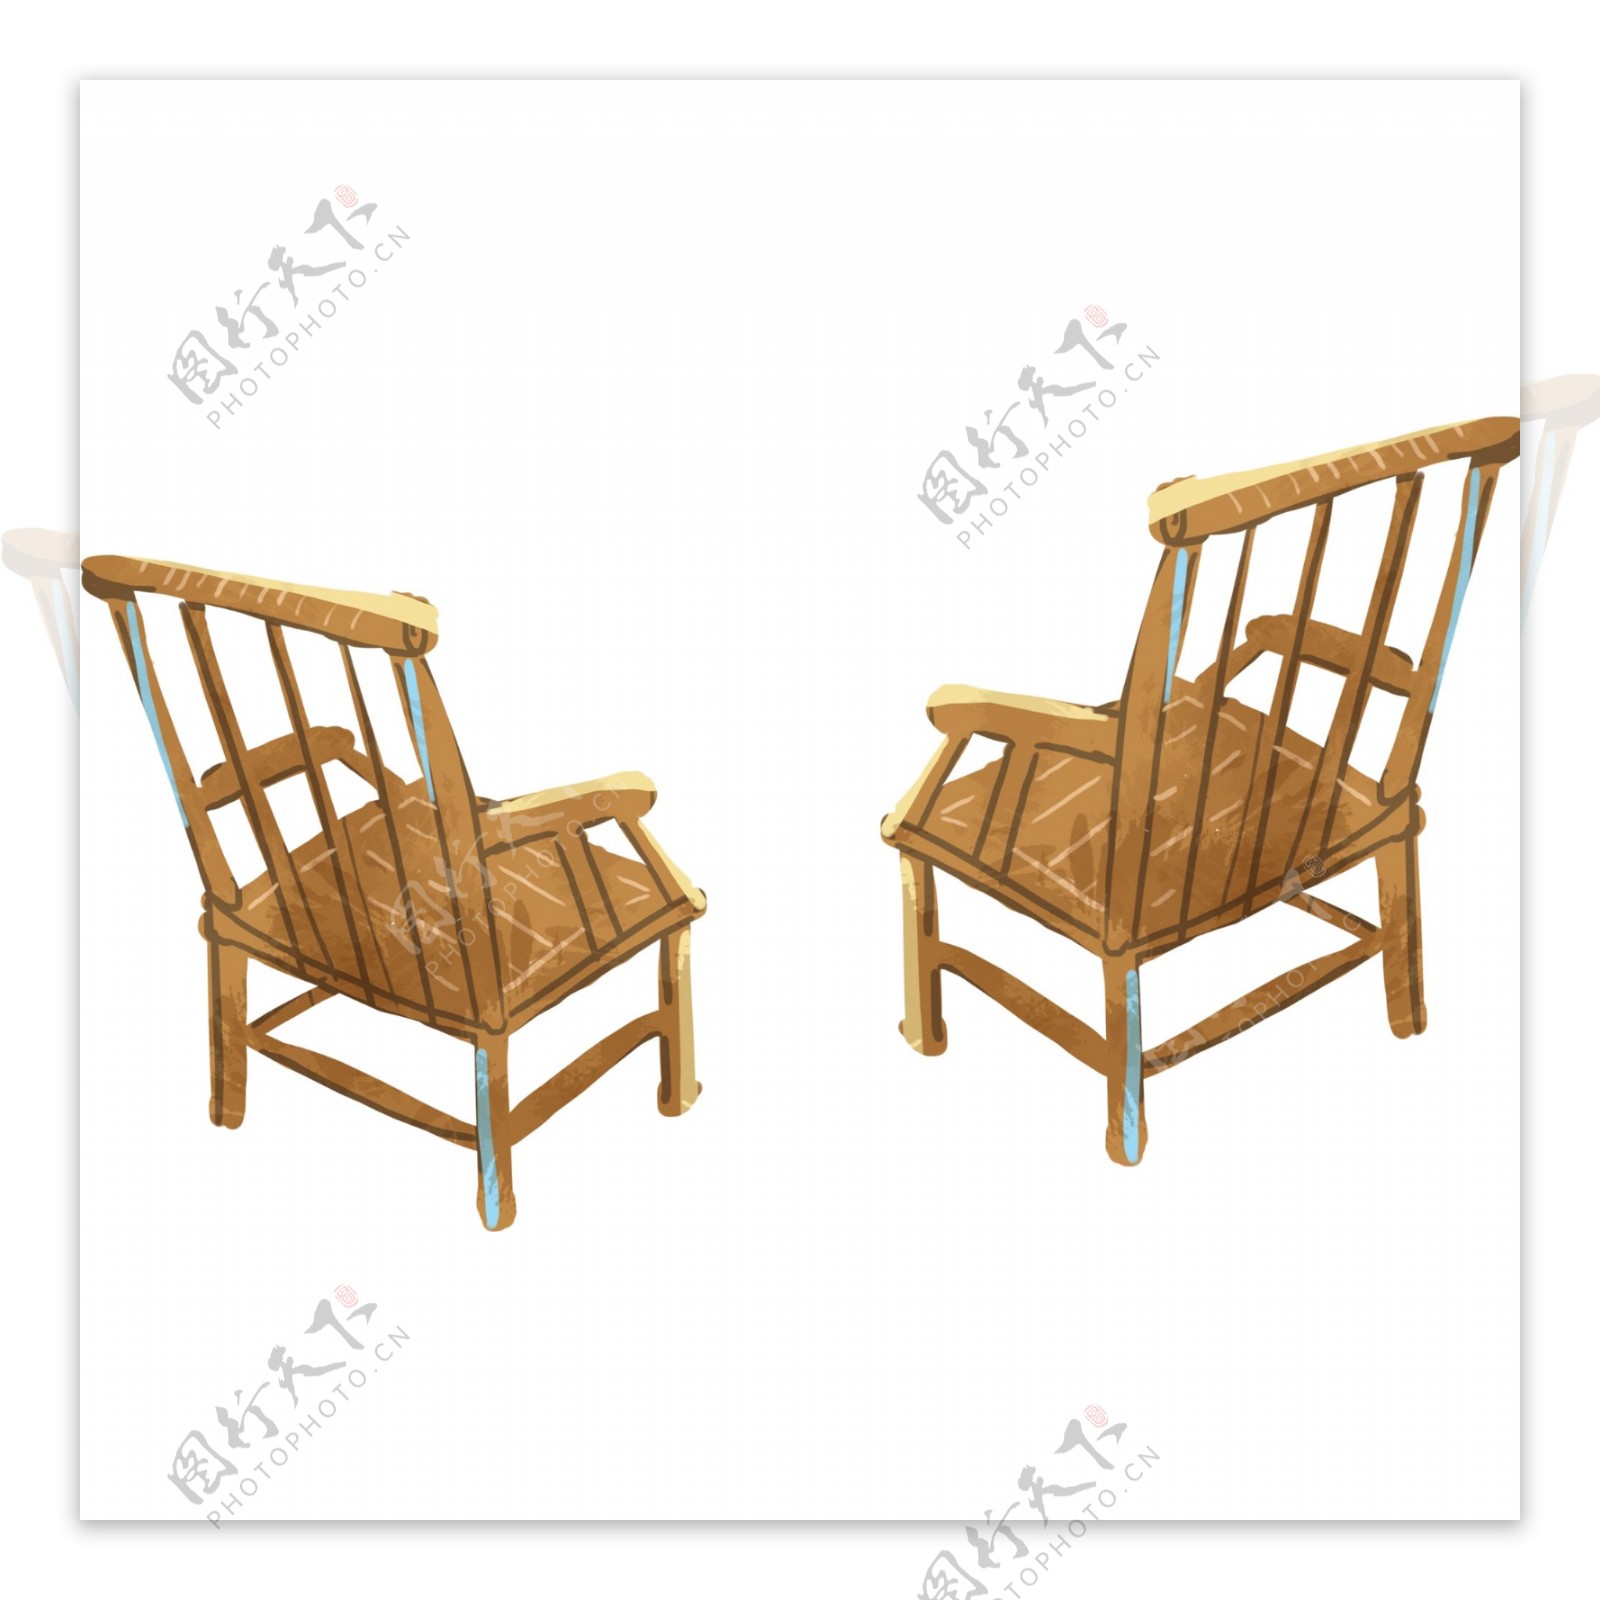 简笔木质椅子图案